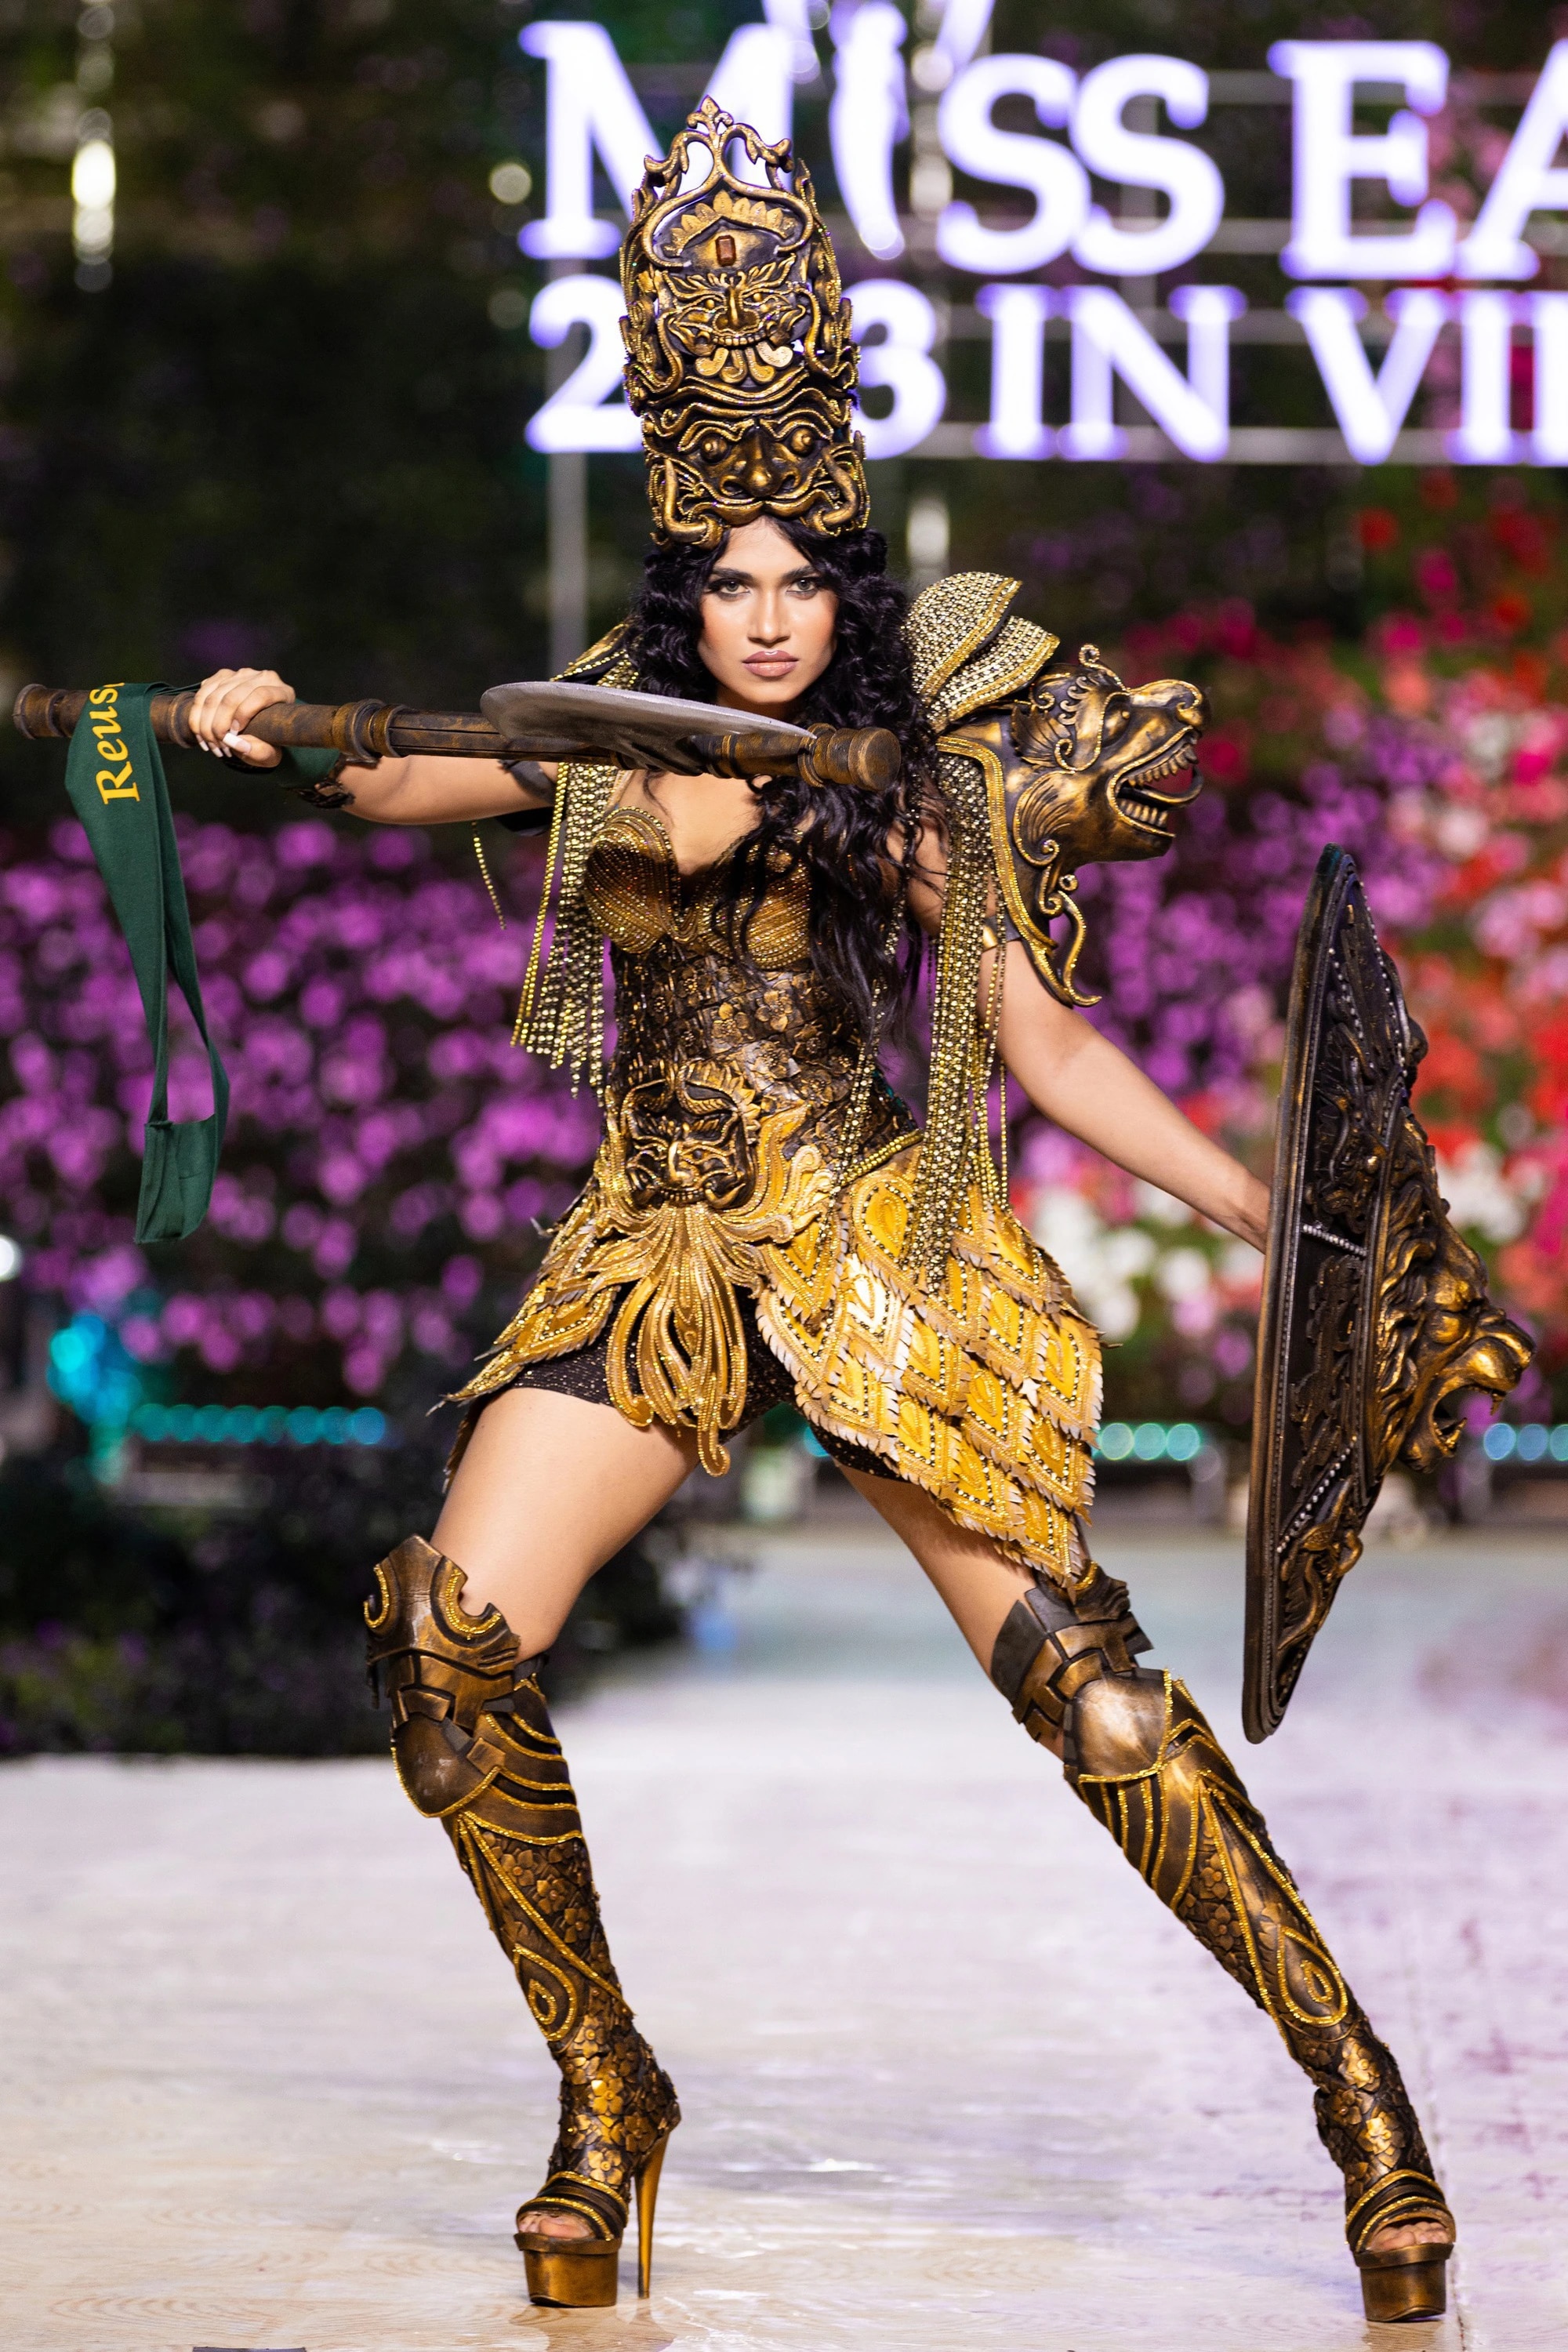 Bán kết Miss Earth 2023 màn trình Trang phục Dân tộc bùng nổ hình ảnh cỏ hoa, muông thú - Ảnh 8.